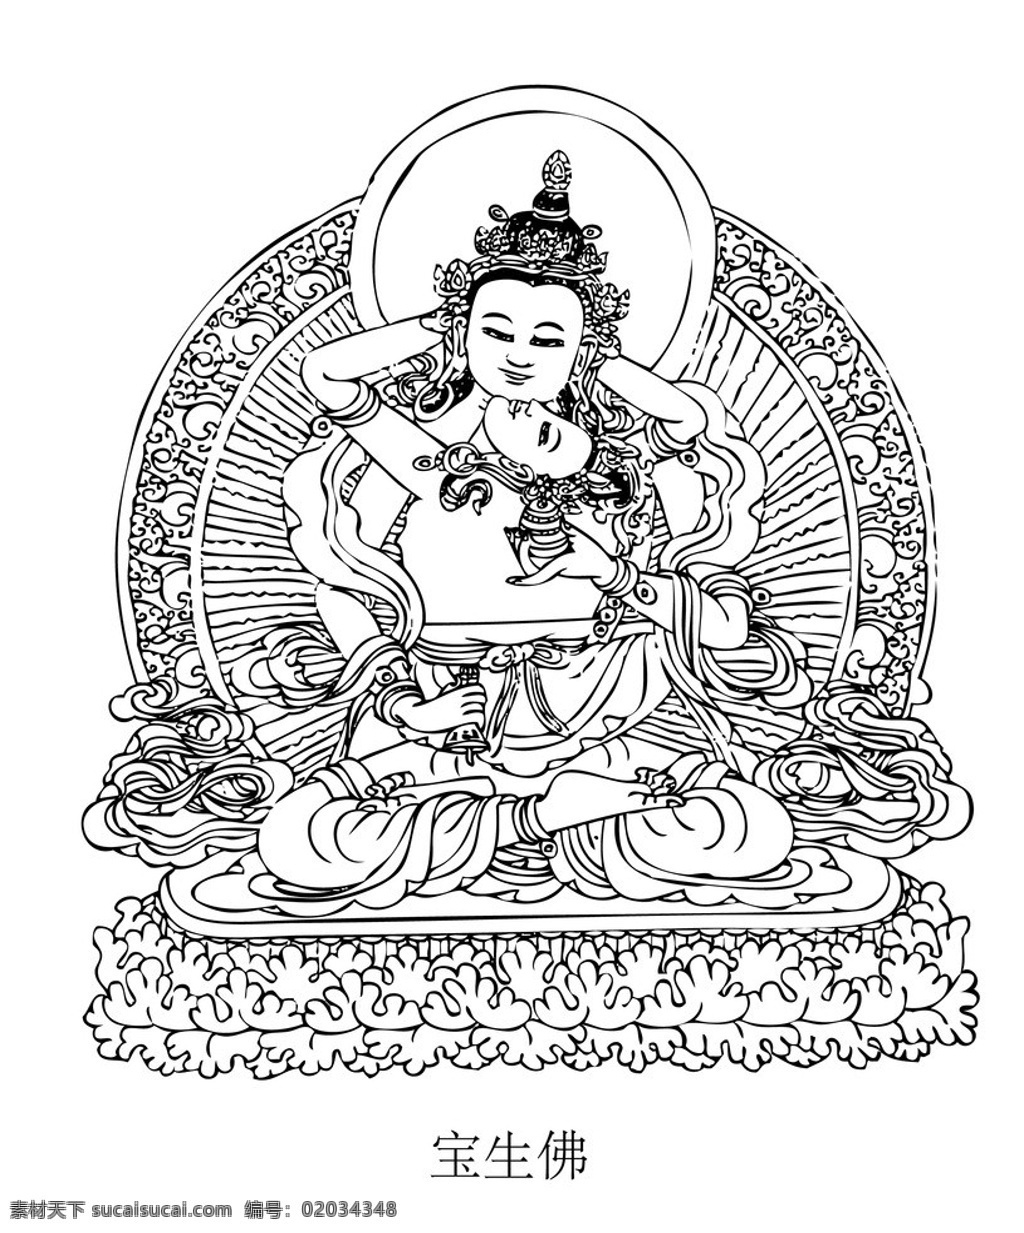 佛像 藏传佛教 宝生 佛 佛教 宗教 手印 国画 线描 美术绘画 文化艺术 矢量